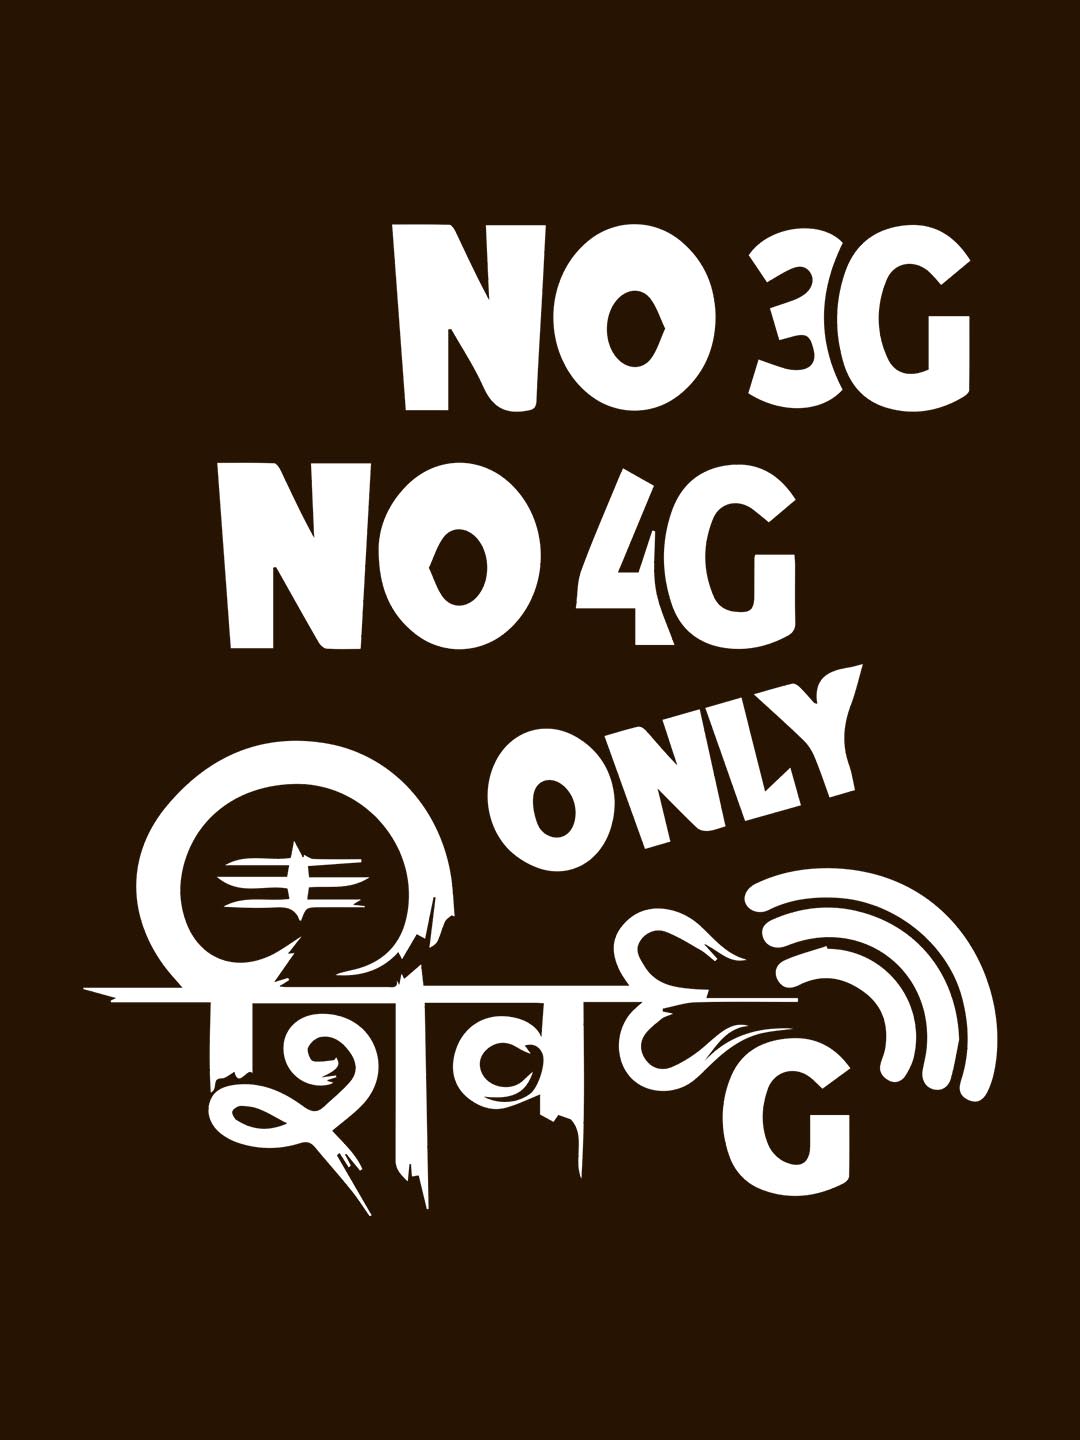 No 3G No 4G Brown T-Shirt